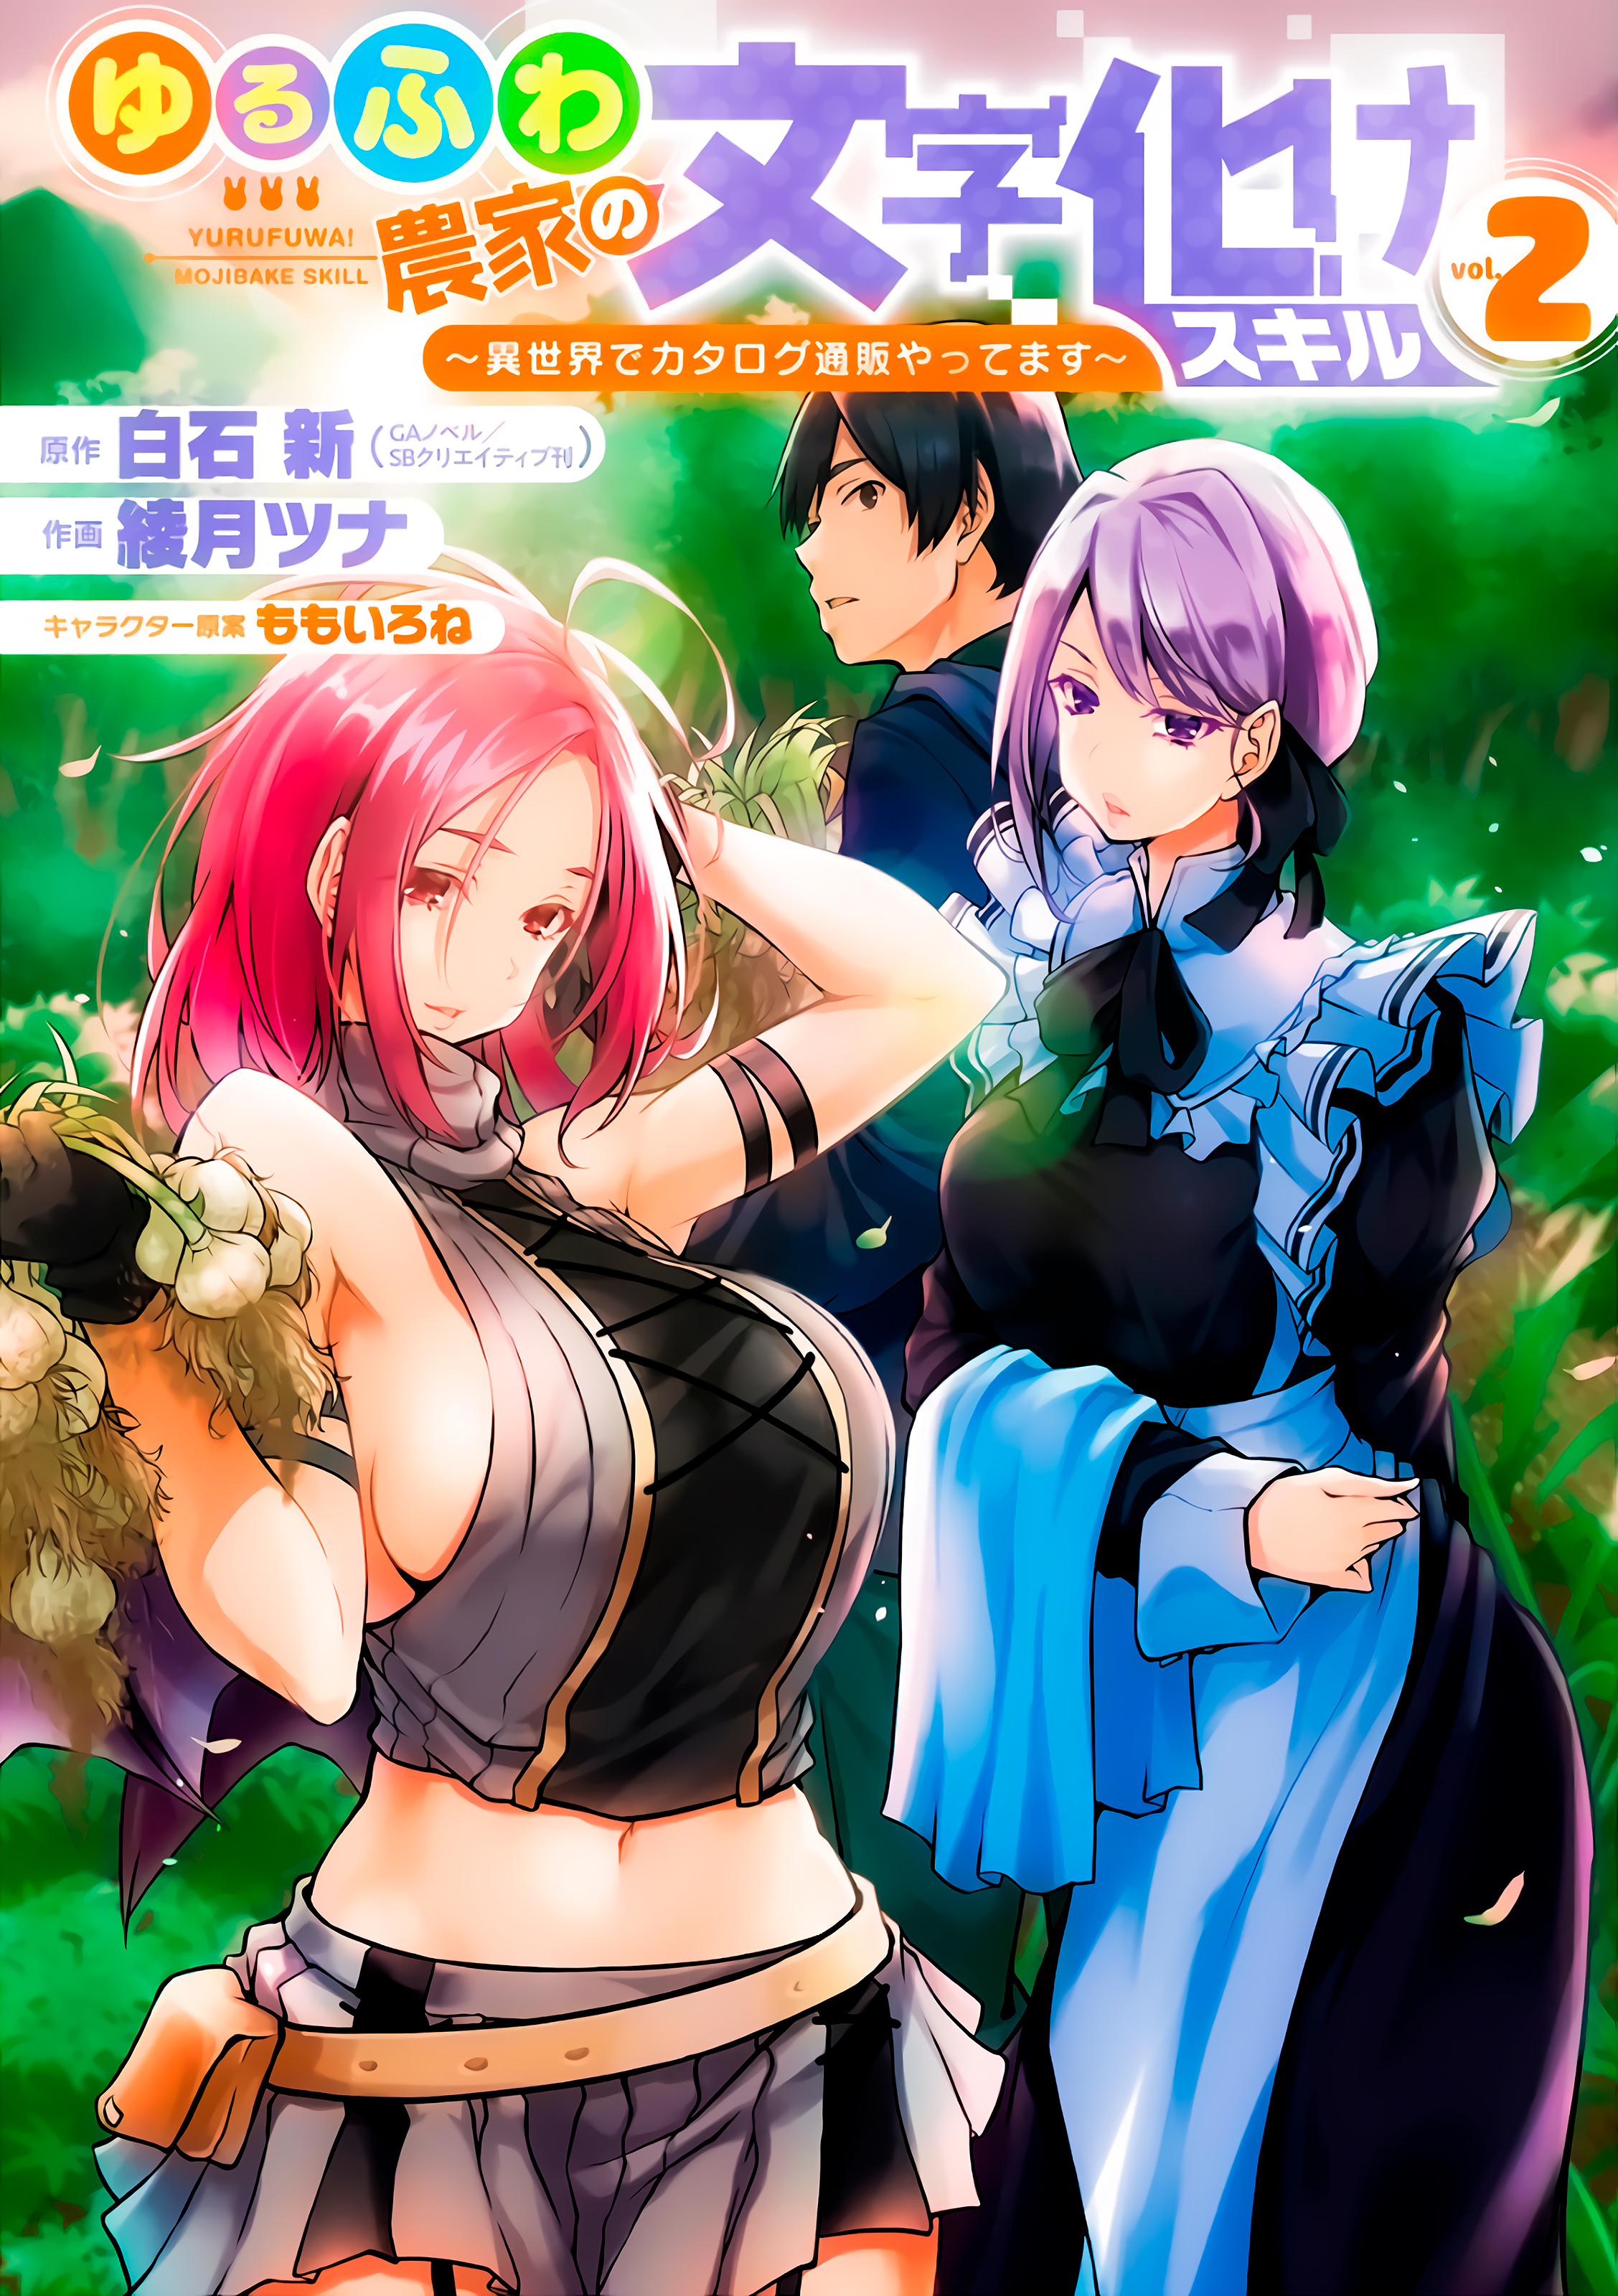 Goyabu Animes APK 6.0.5 for Android – Download Goyabu Animes XAPK